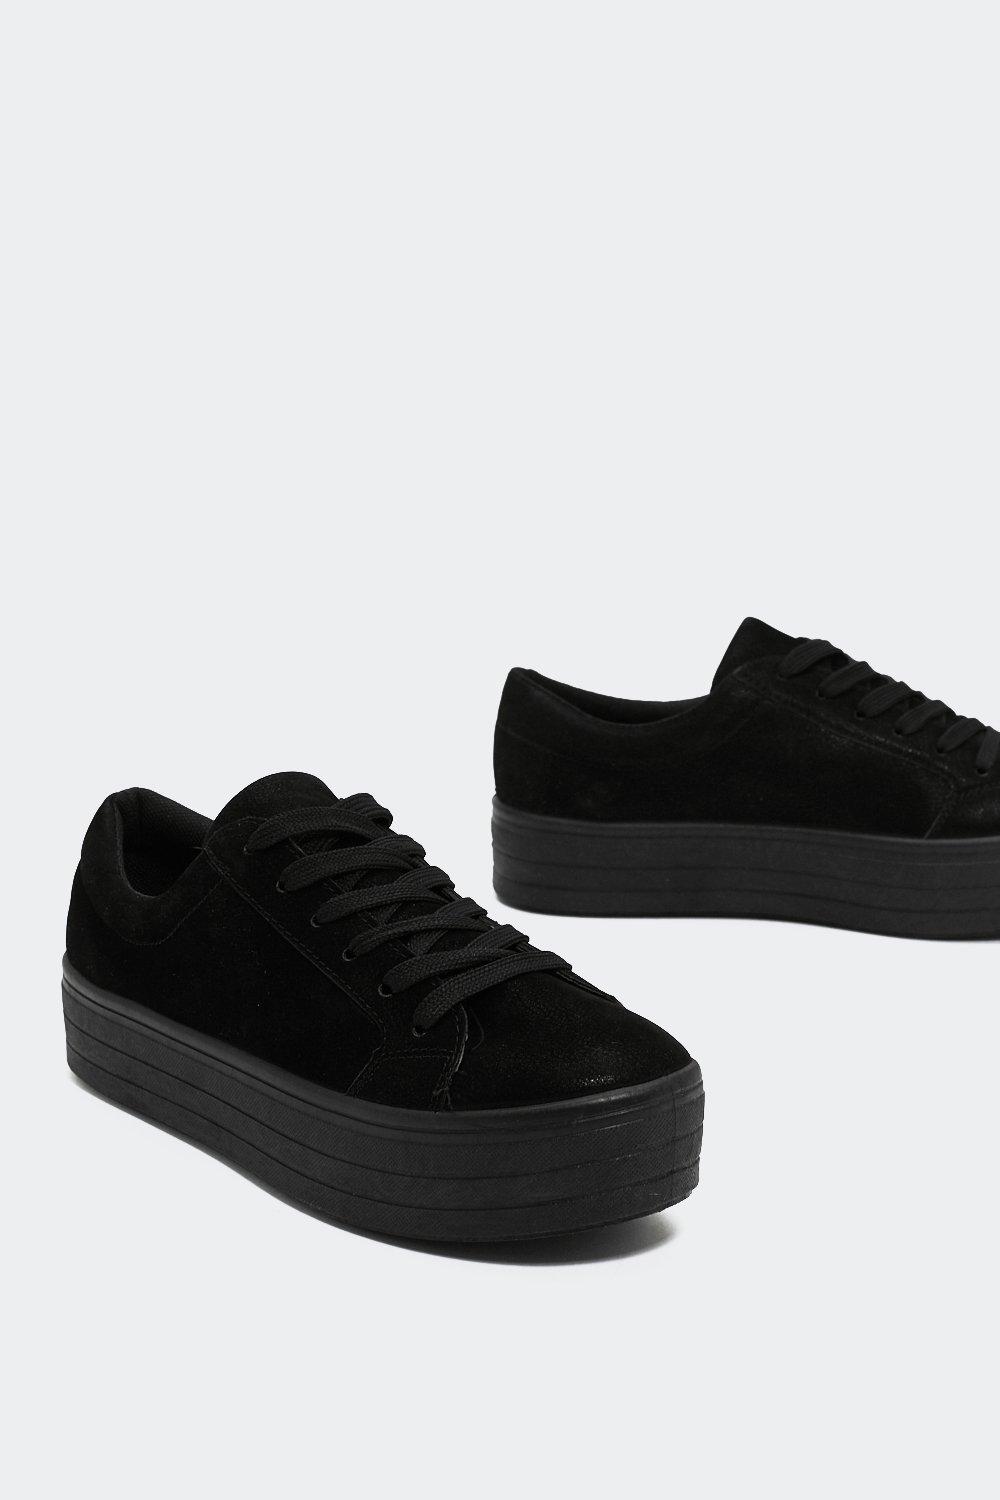 black on black sneakers